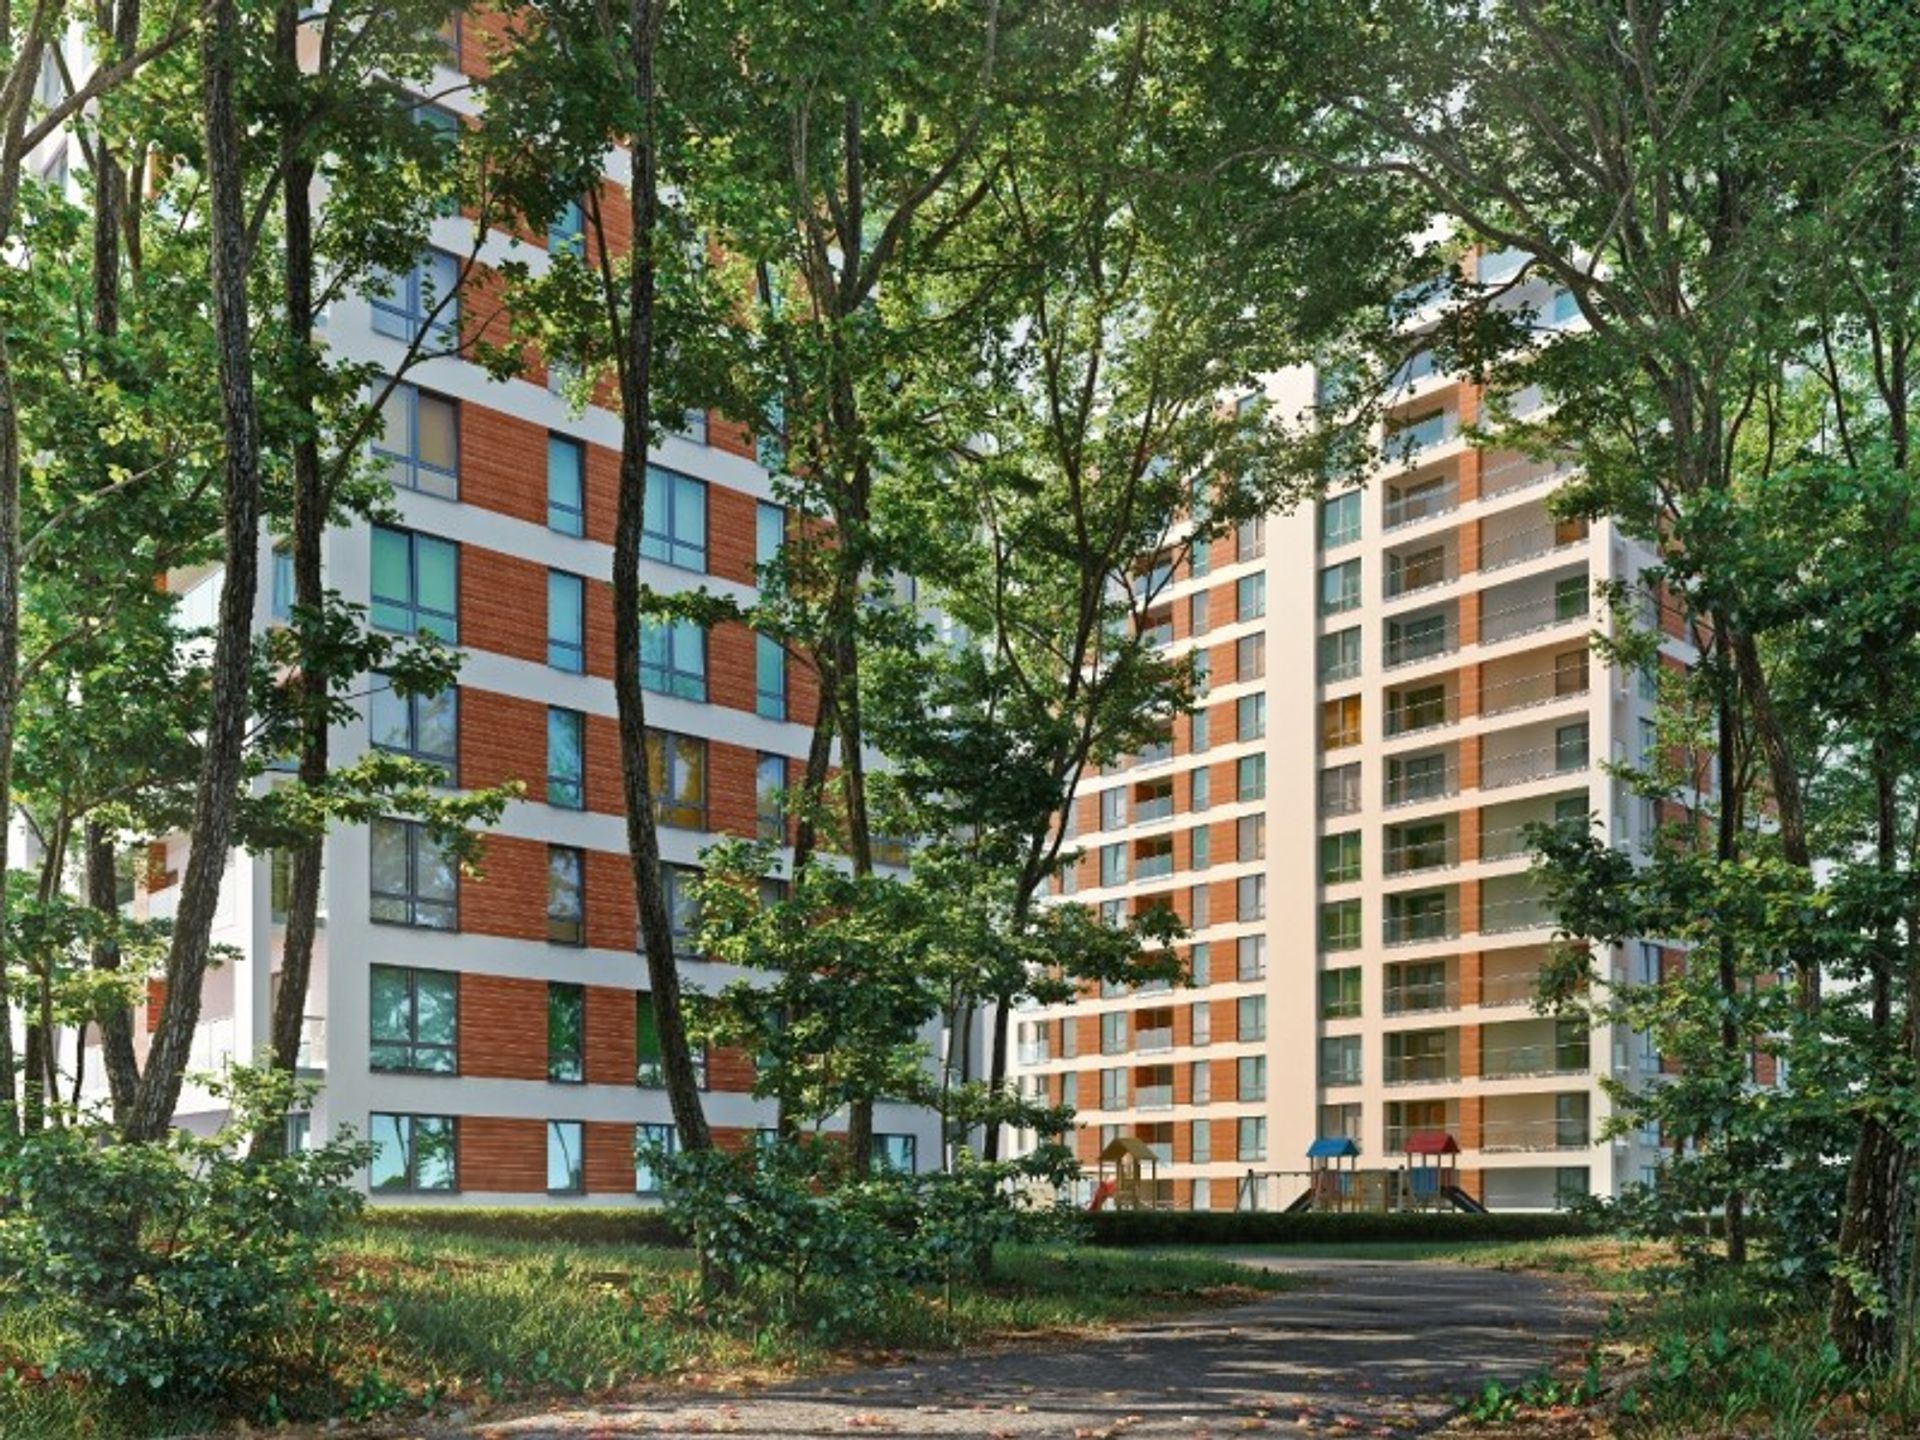  Henpol buduje nowe osiedle w Poznaniu